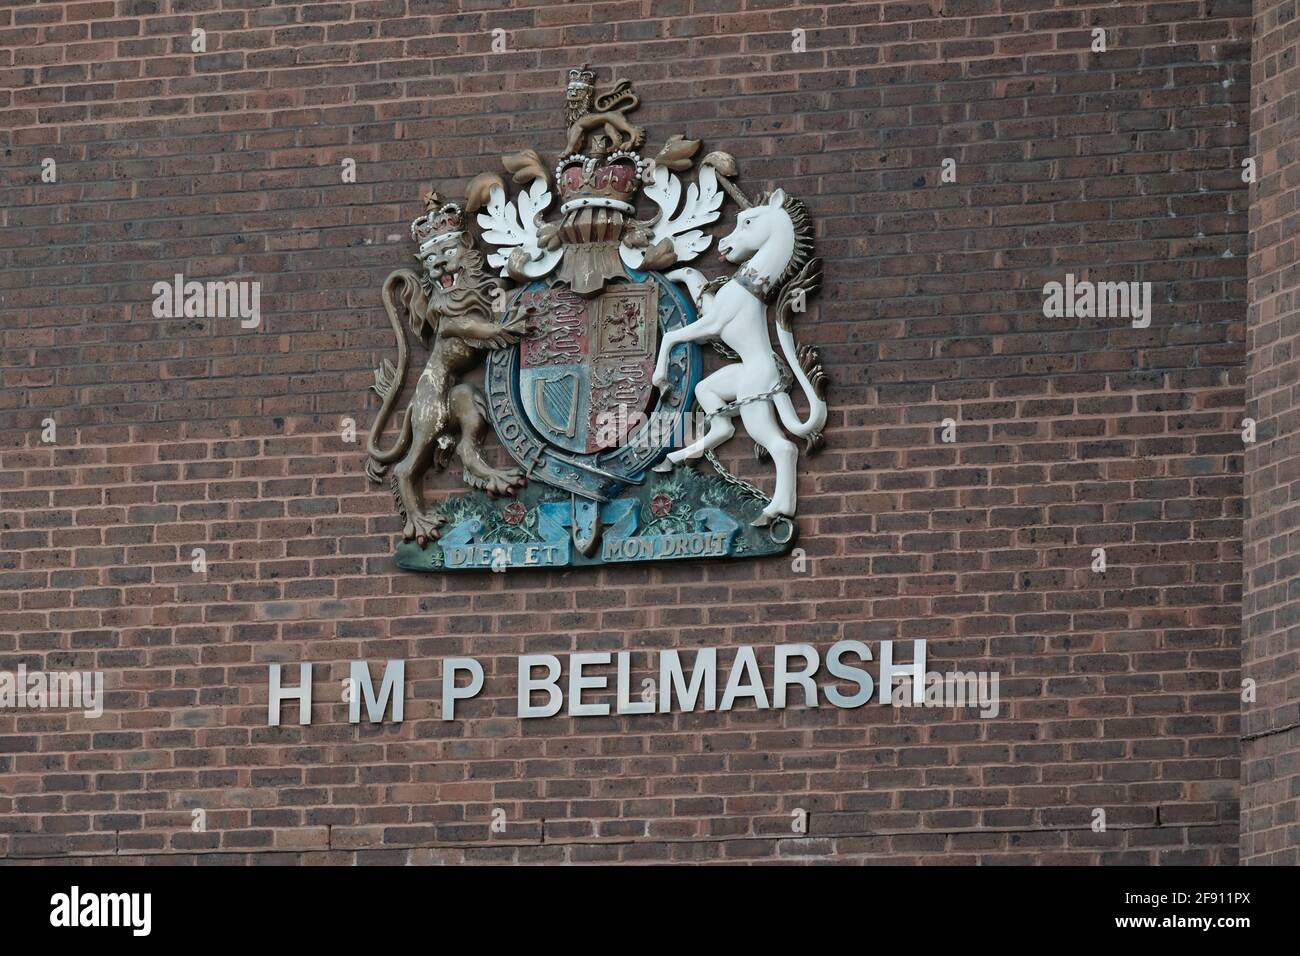 HMP Belmarsh, ist ein Hochsicherheitsgefängnis für Männer im Südosten Londons. Julian Assange ist ein hochrangiger Häftling im Gefängnis. Stockfoto